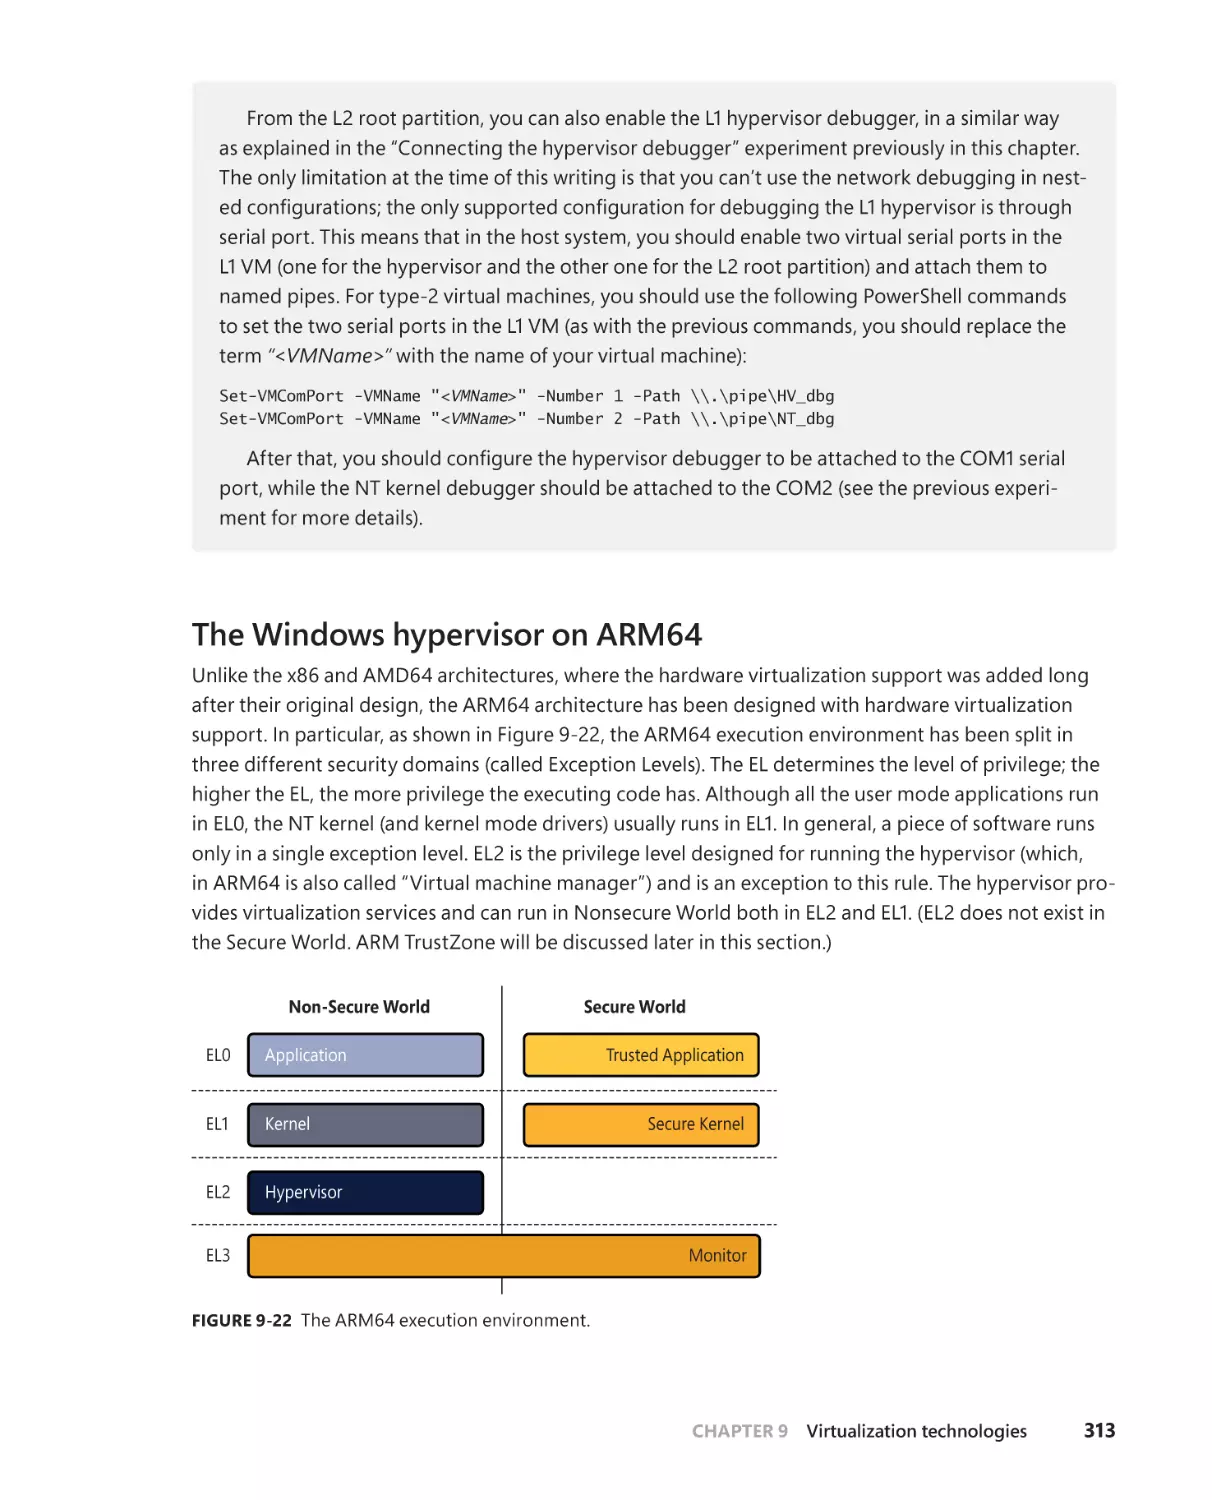 The Windows hypervisor on ARM64